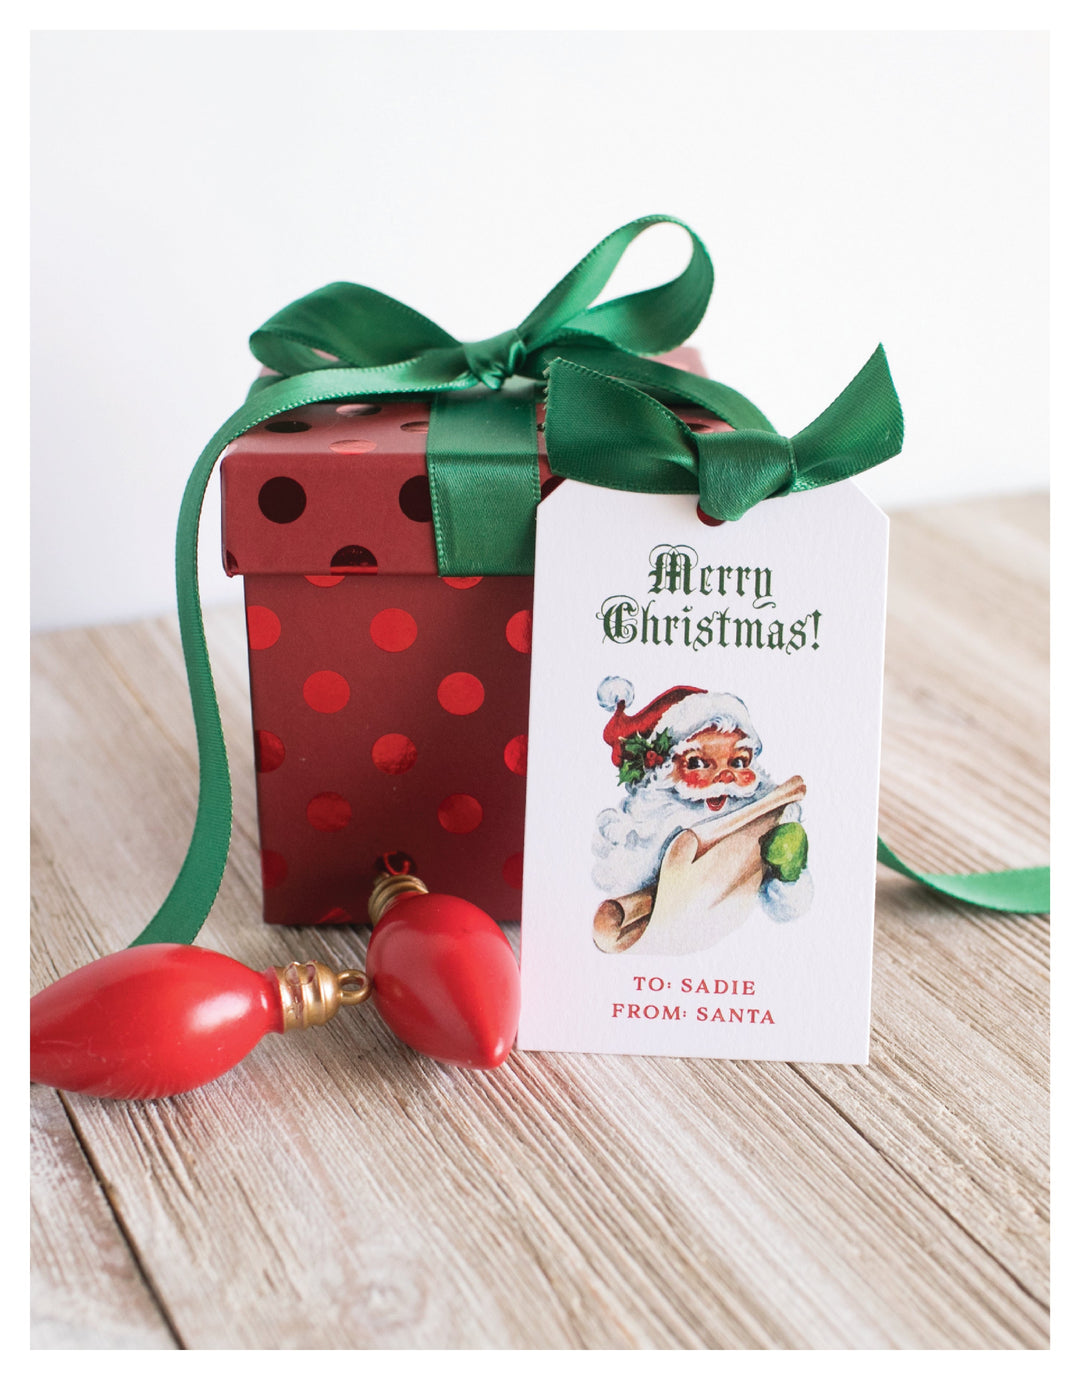 The Santa II Christmas Gift Tag